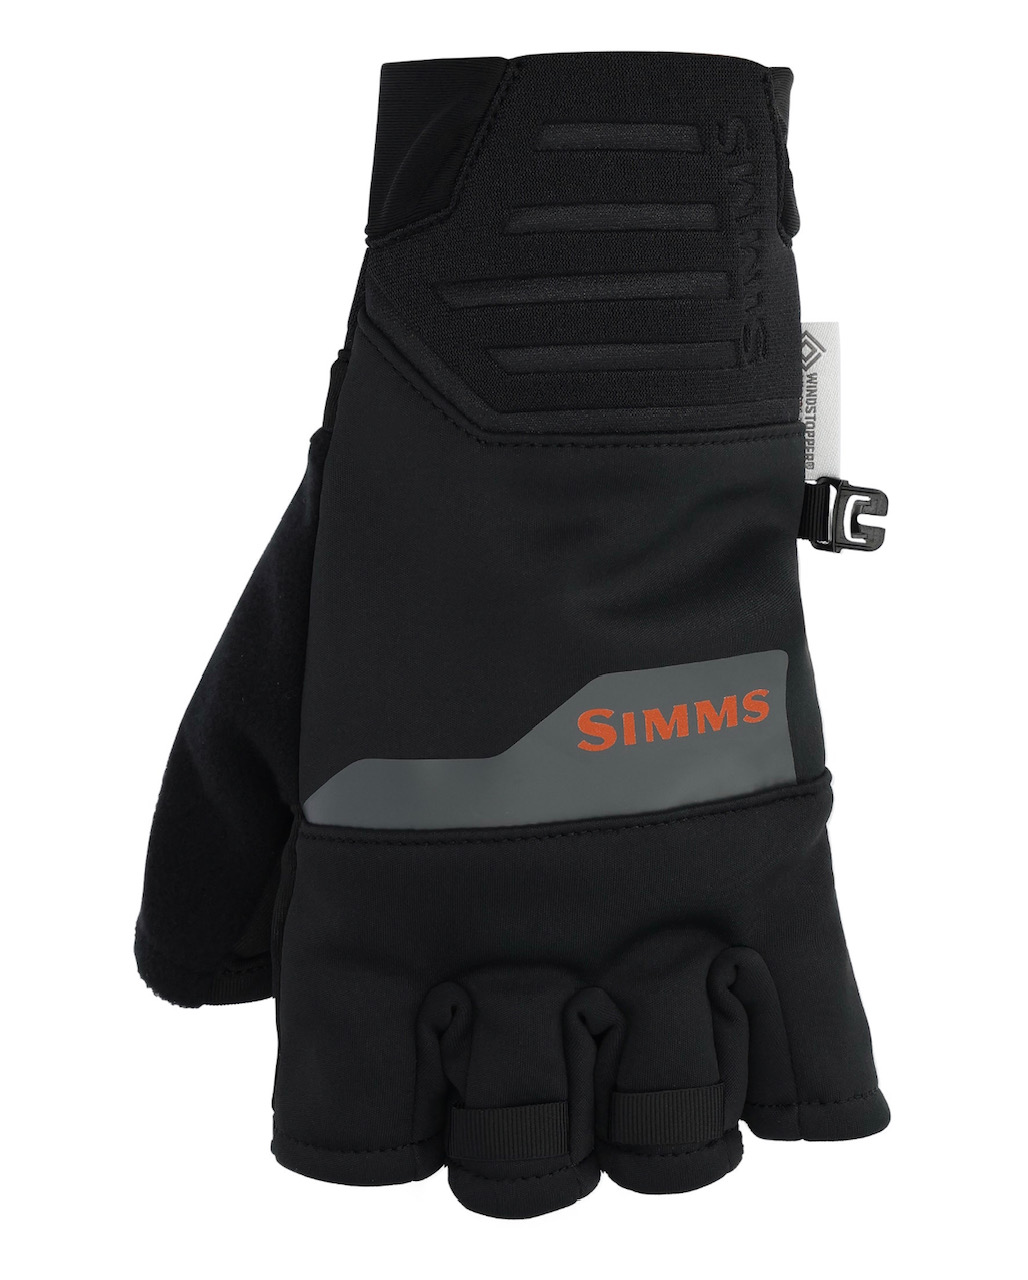 Simms WINDSTOPPER Half-Finger Glove - Black - Large